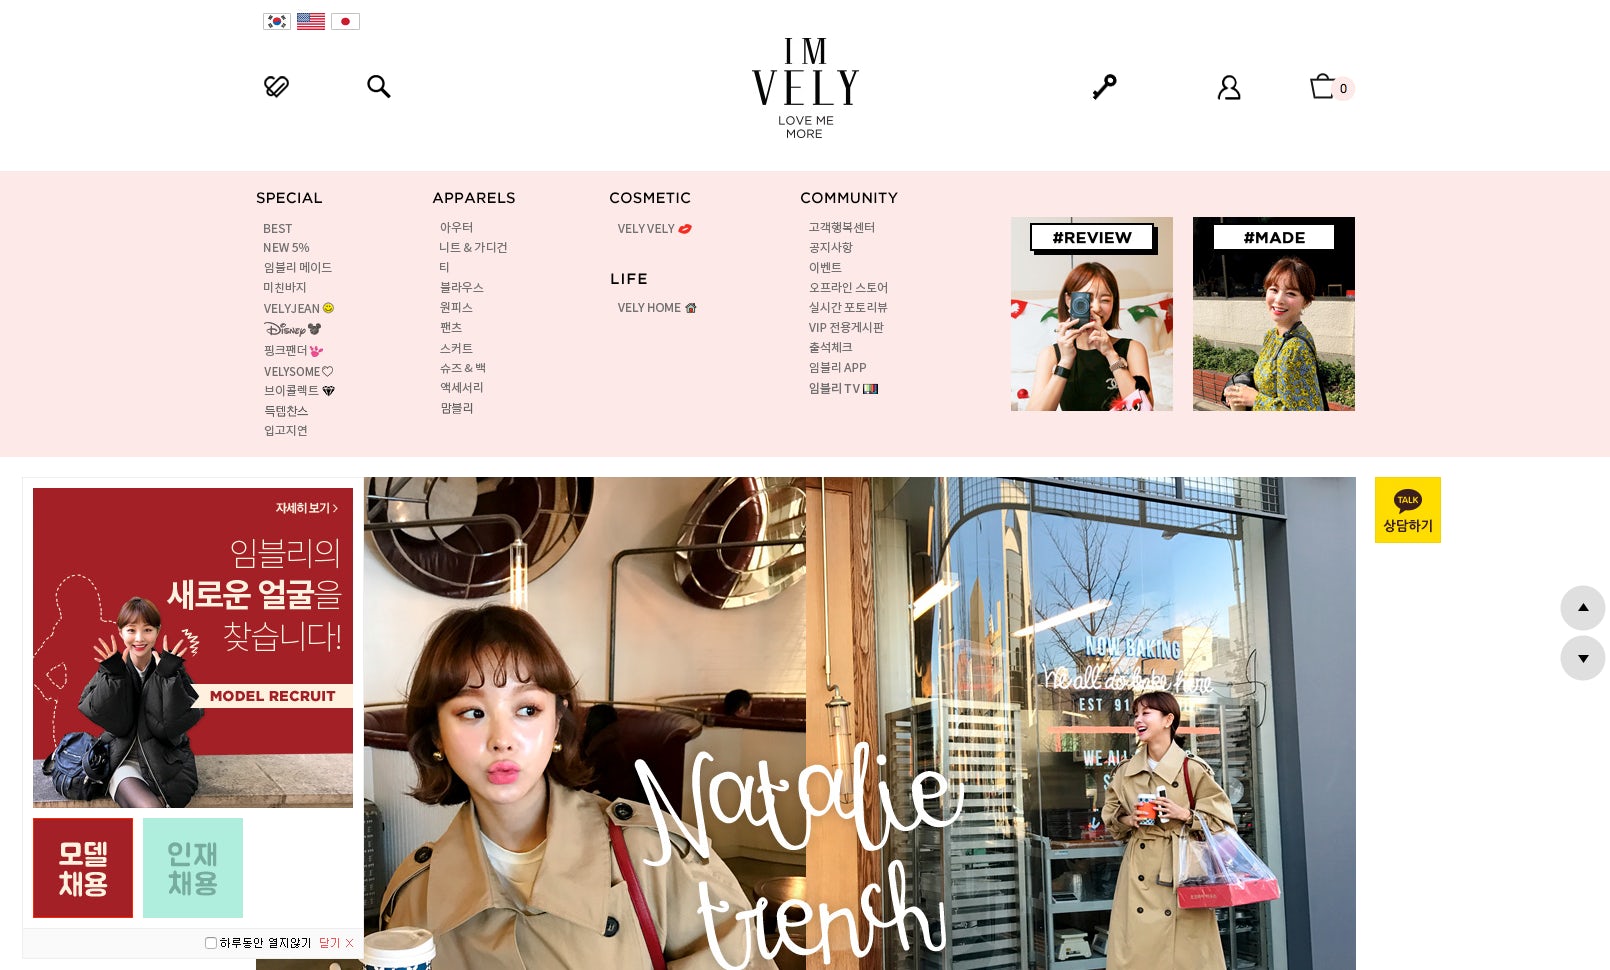 South Korean e-commerce site Imvely